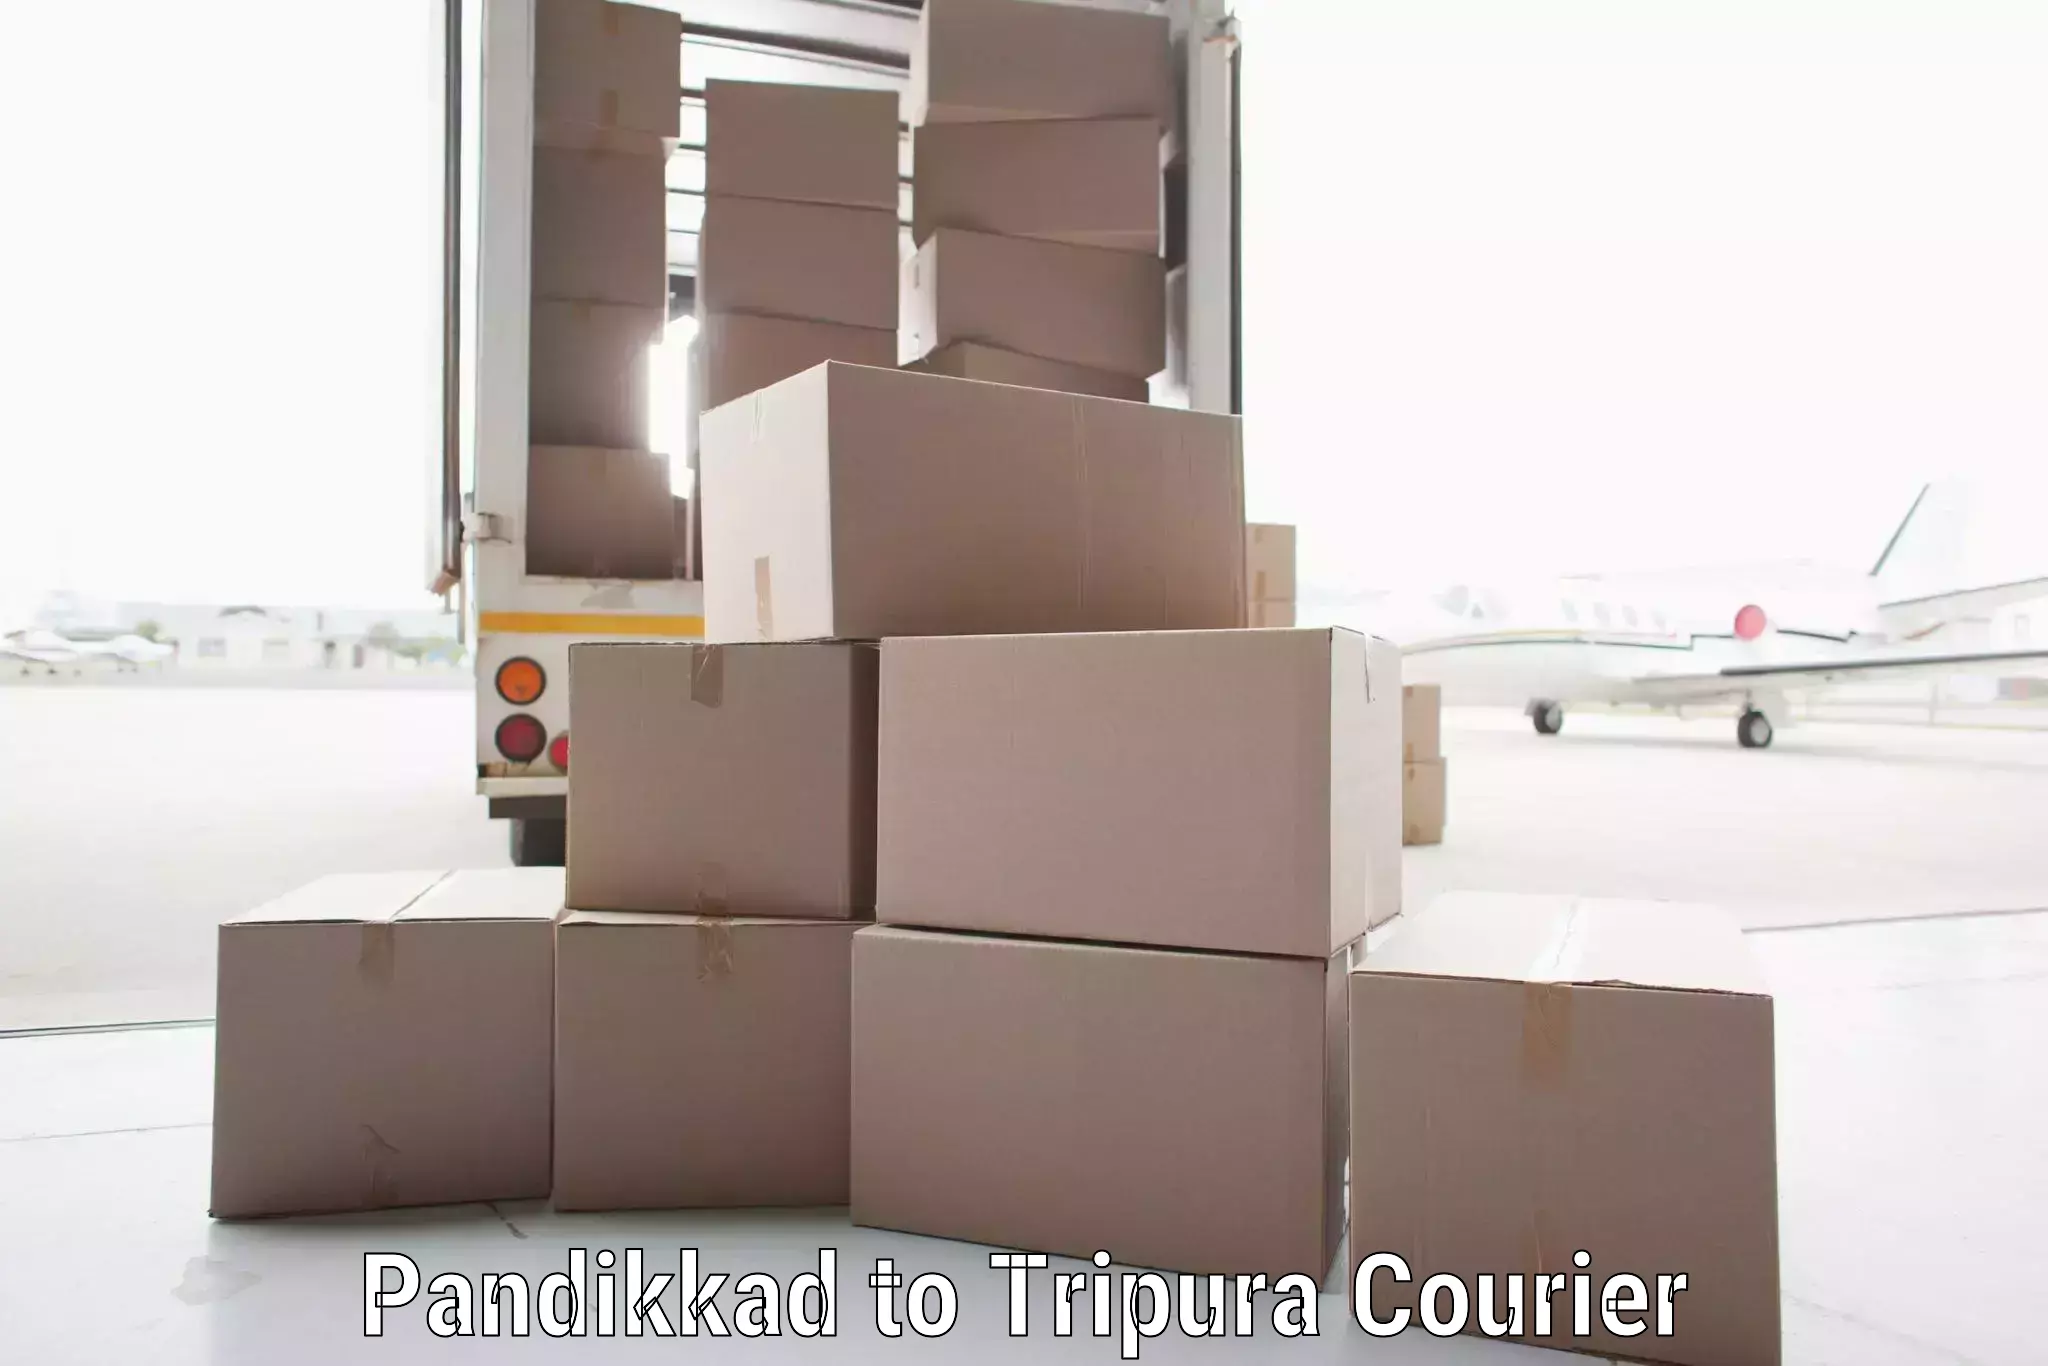 Efficient shipping platforms Pandikkad to Tripura